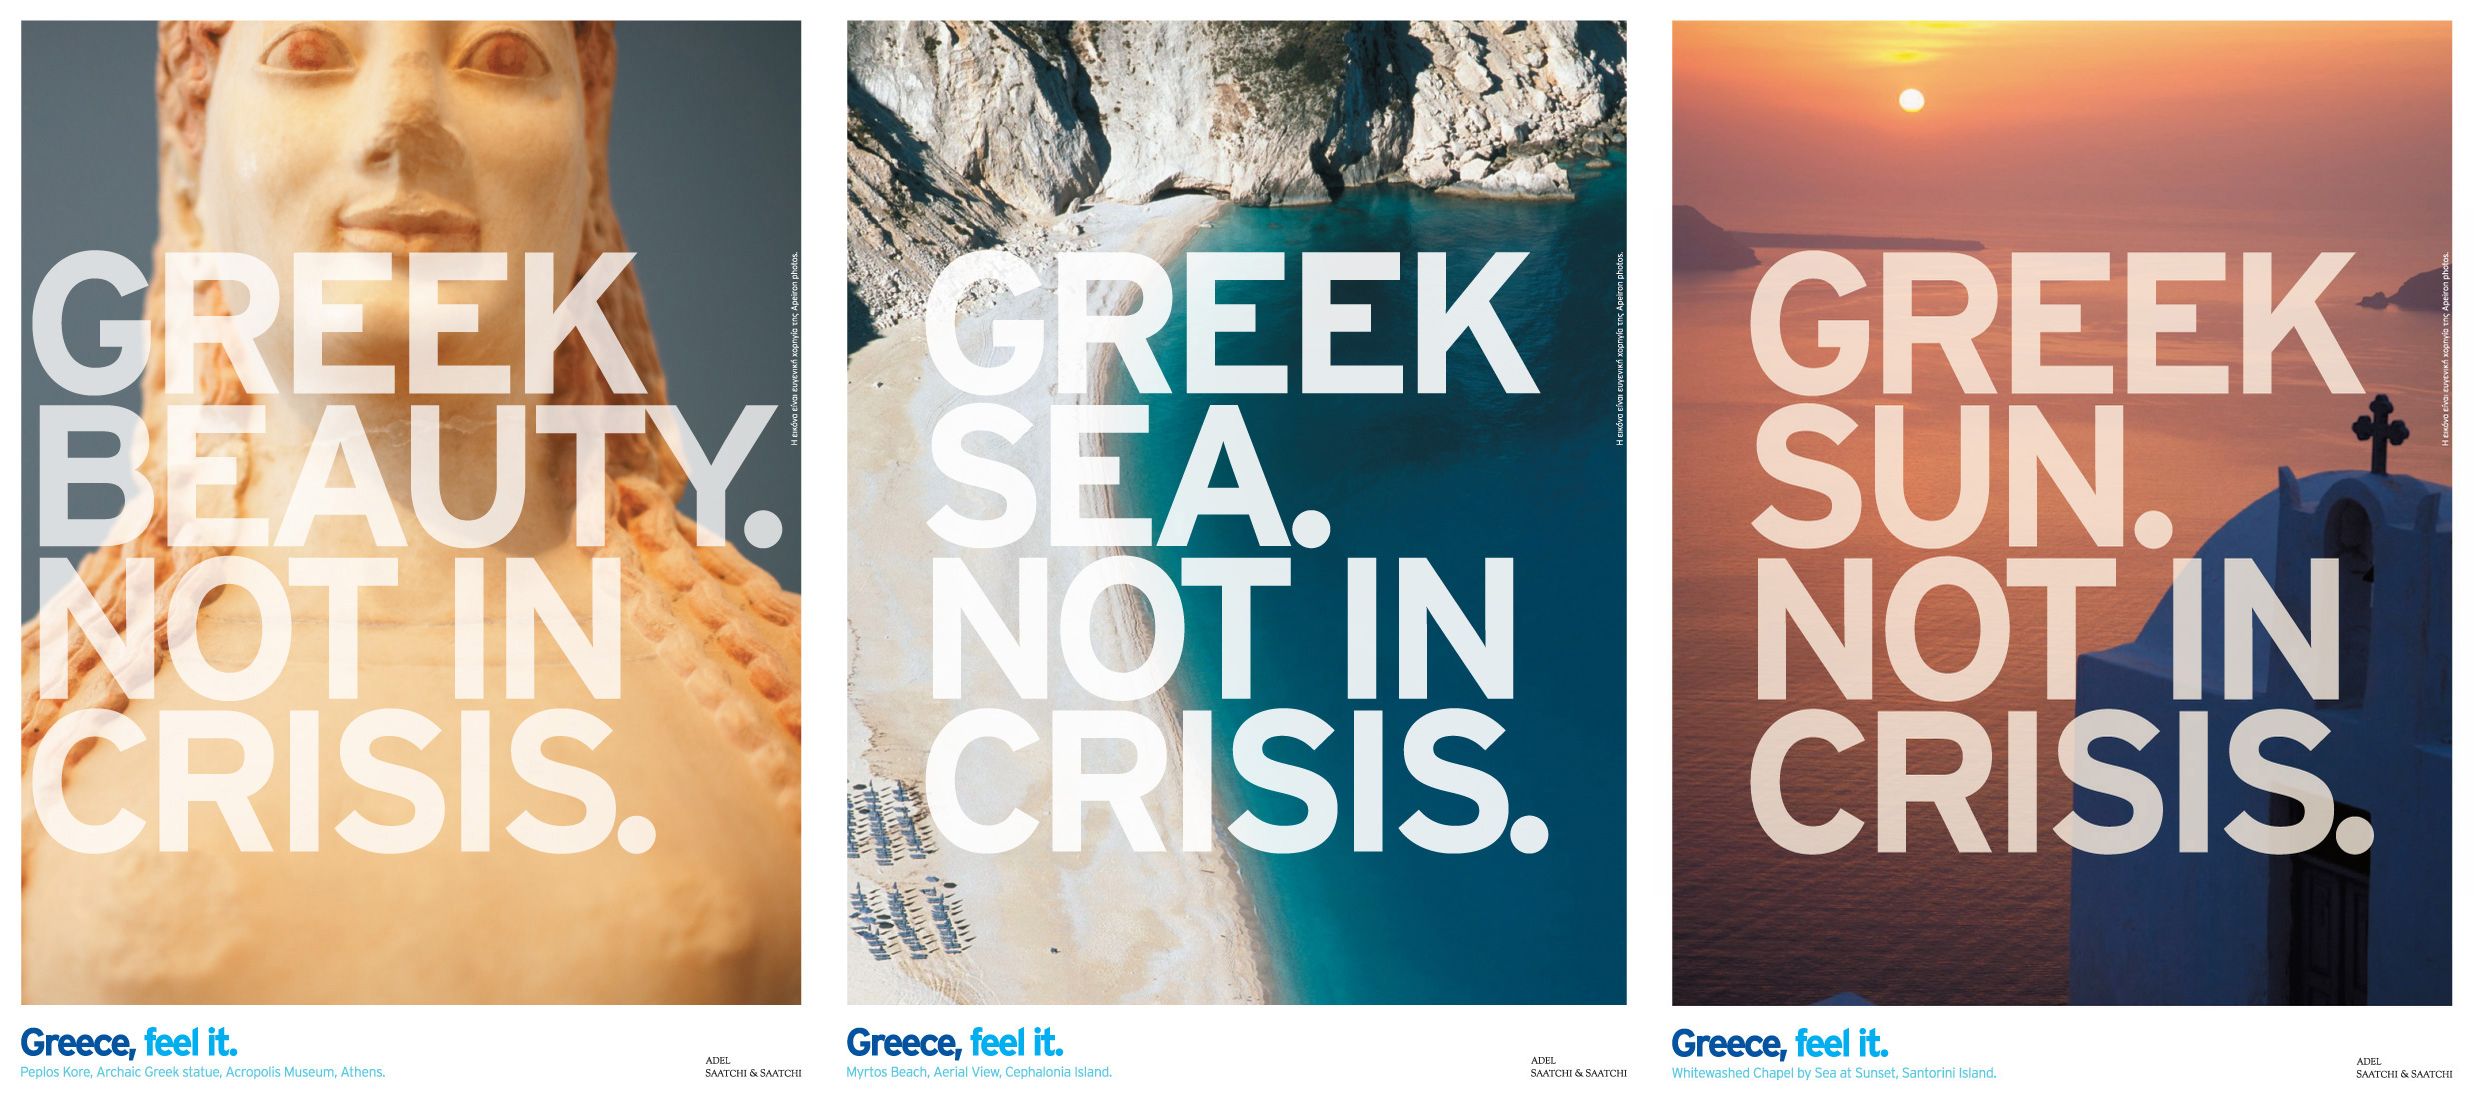 Πώς θα διαφημίζατε την Ελλάδα στο εξωτερικό;